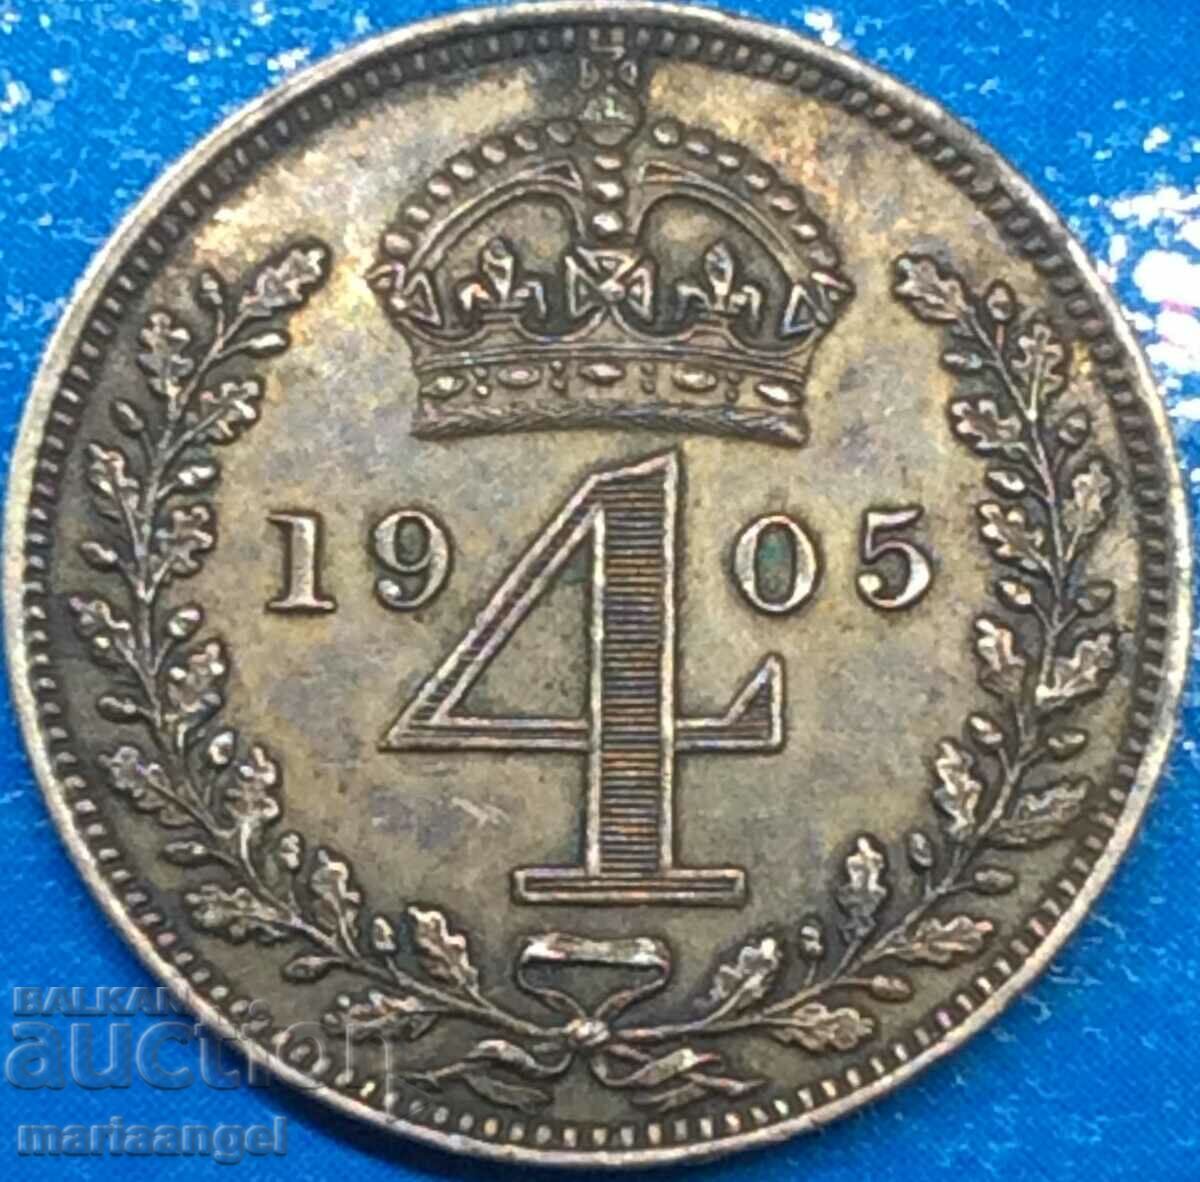 4 πένες 1905 Μεγάλη Βρετανία Maundy Edward VII (1848-1910)